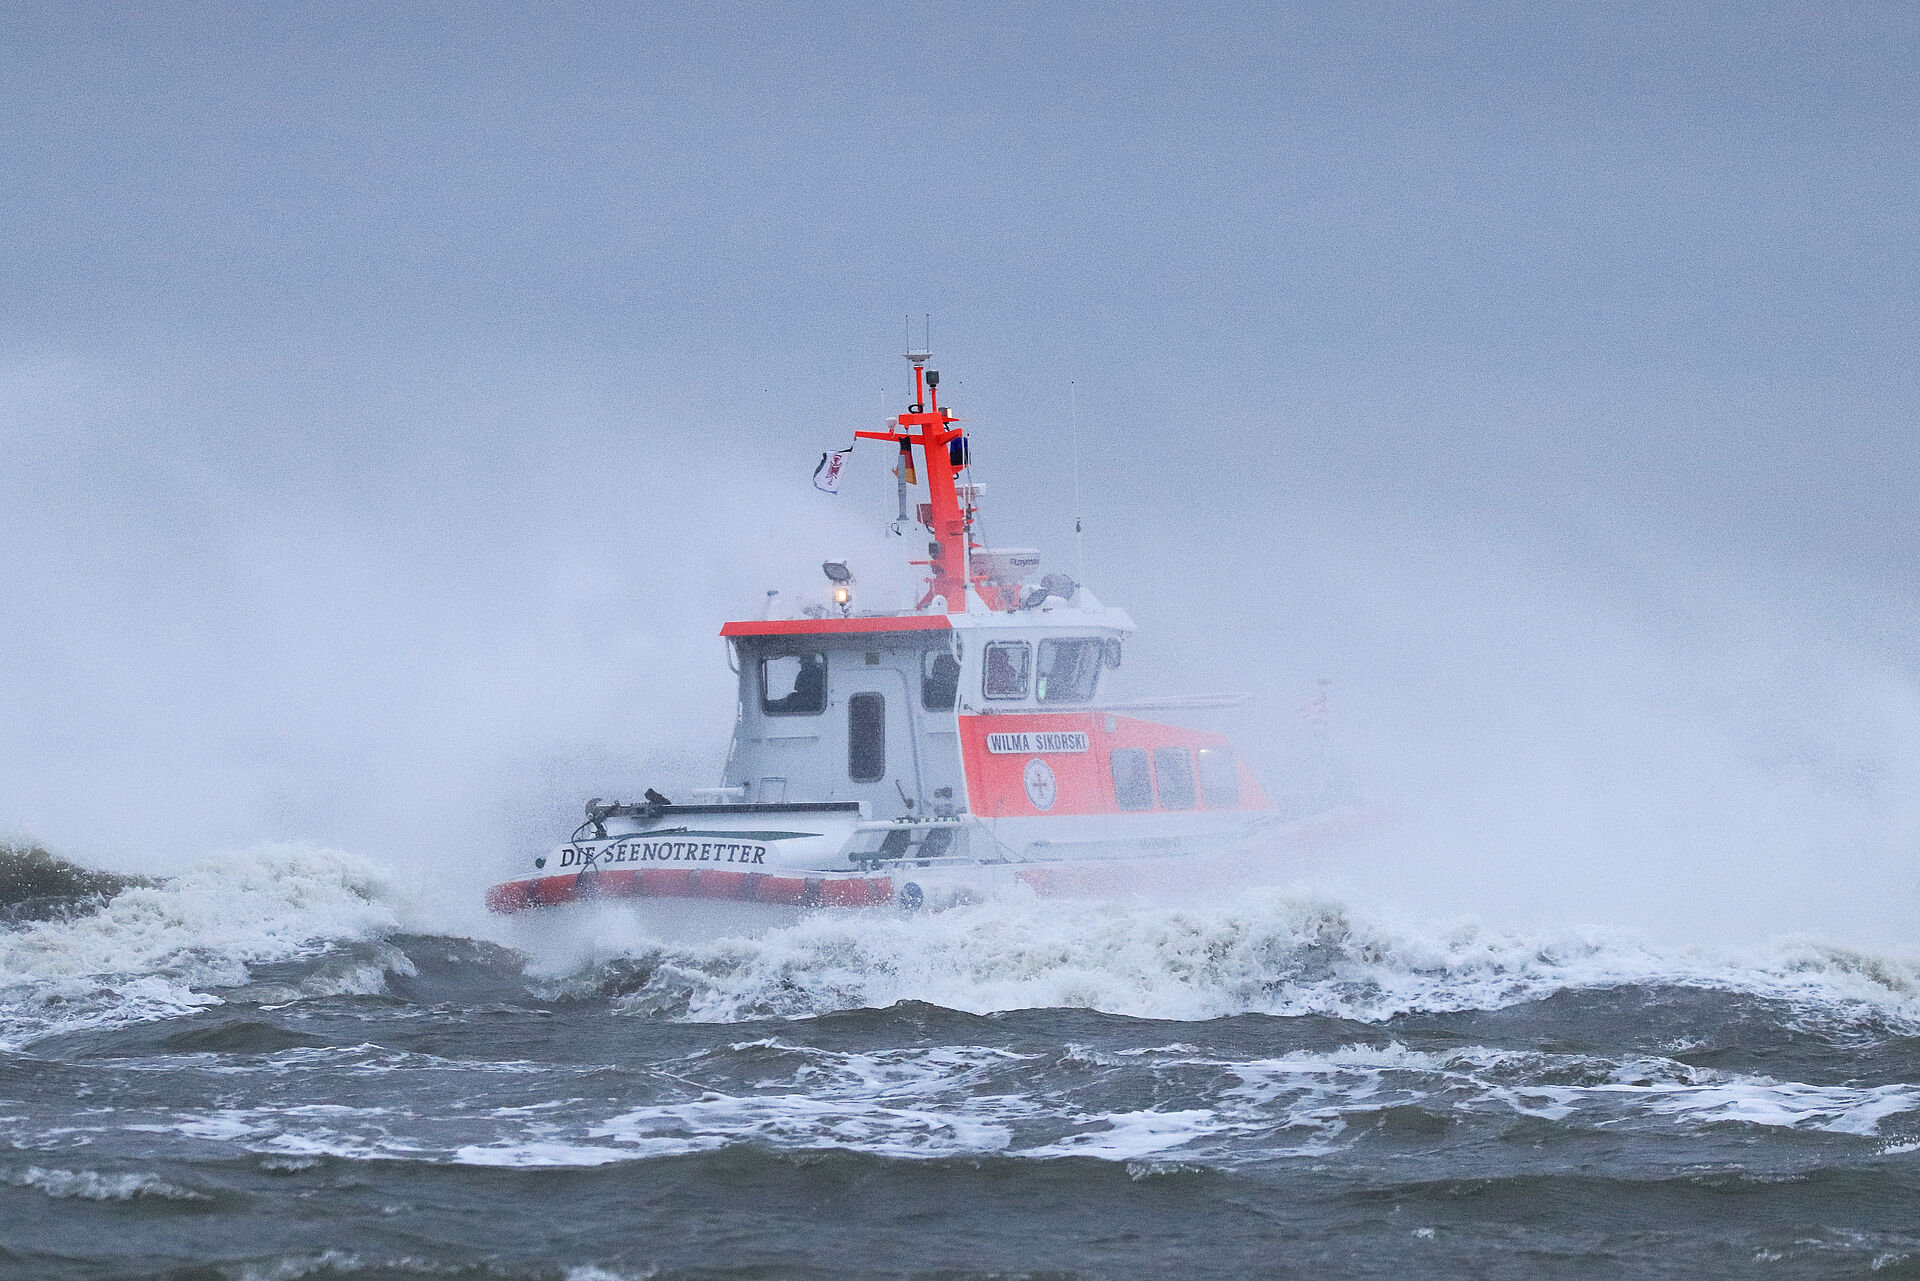 An einem nebeligen Tag fährt das Seenotrettinungsboot WILMA SIKORSKI durch Wellen.